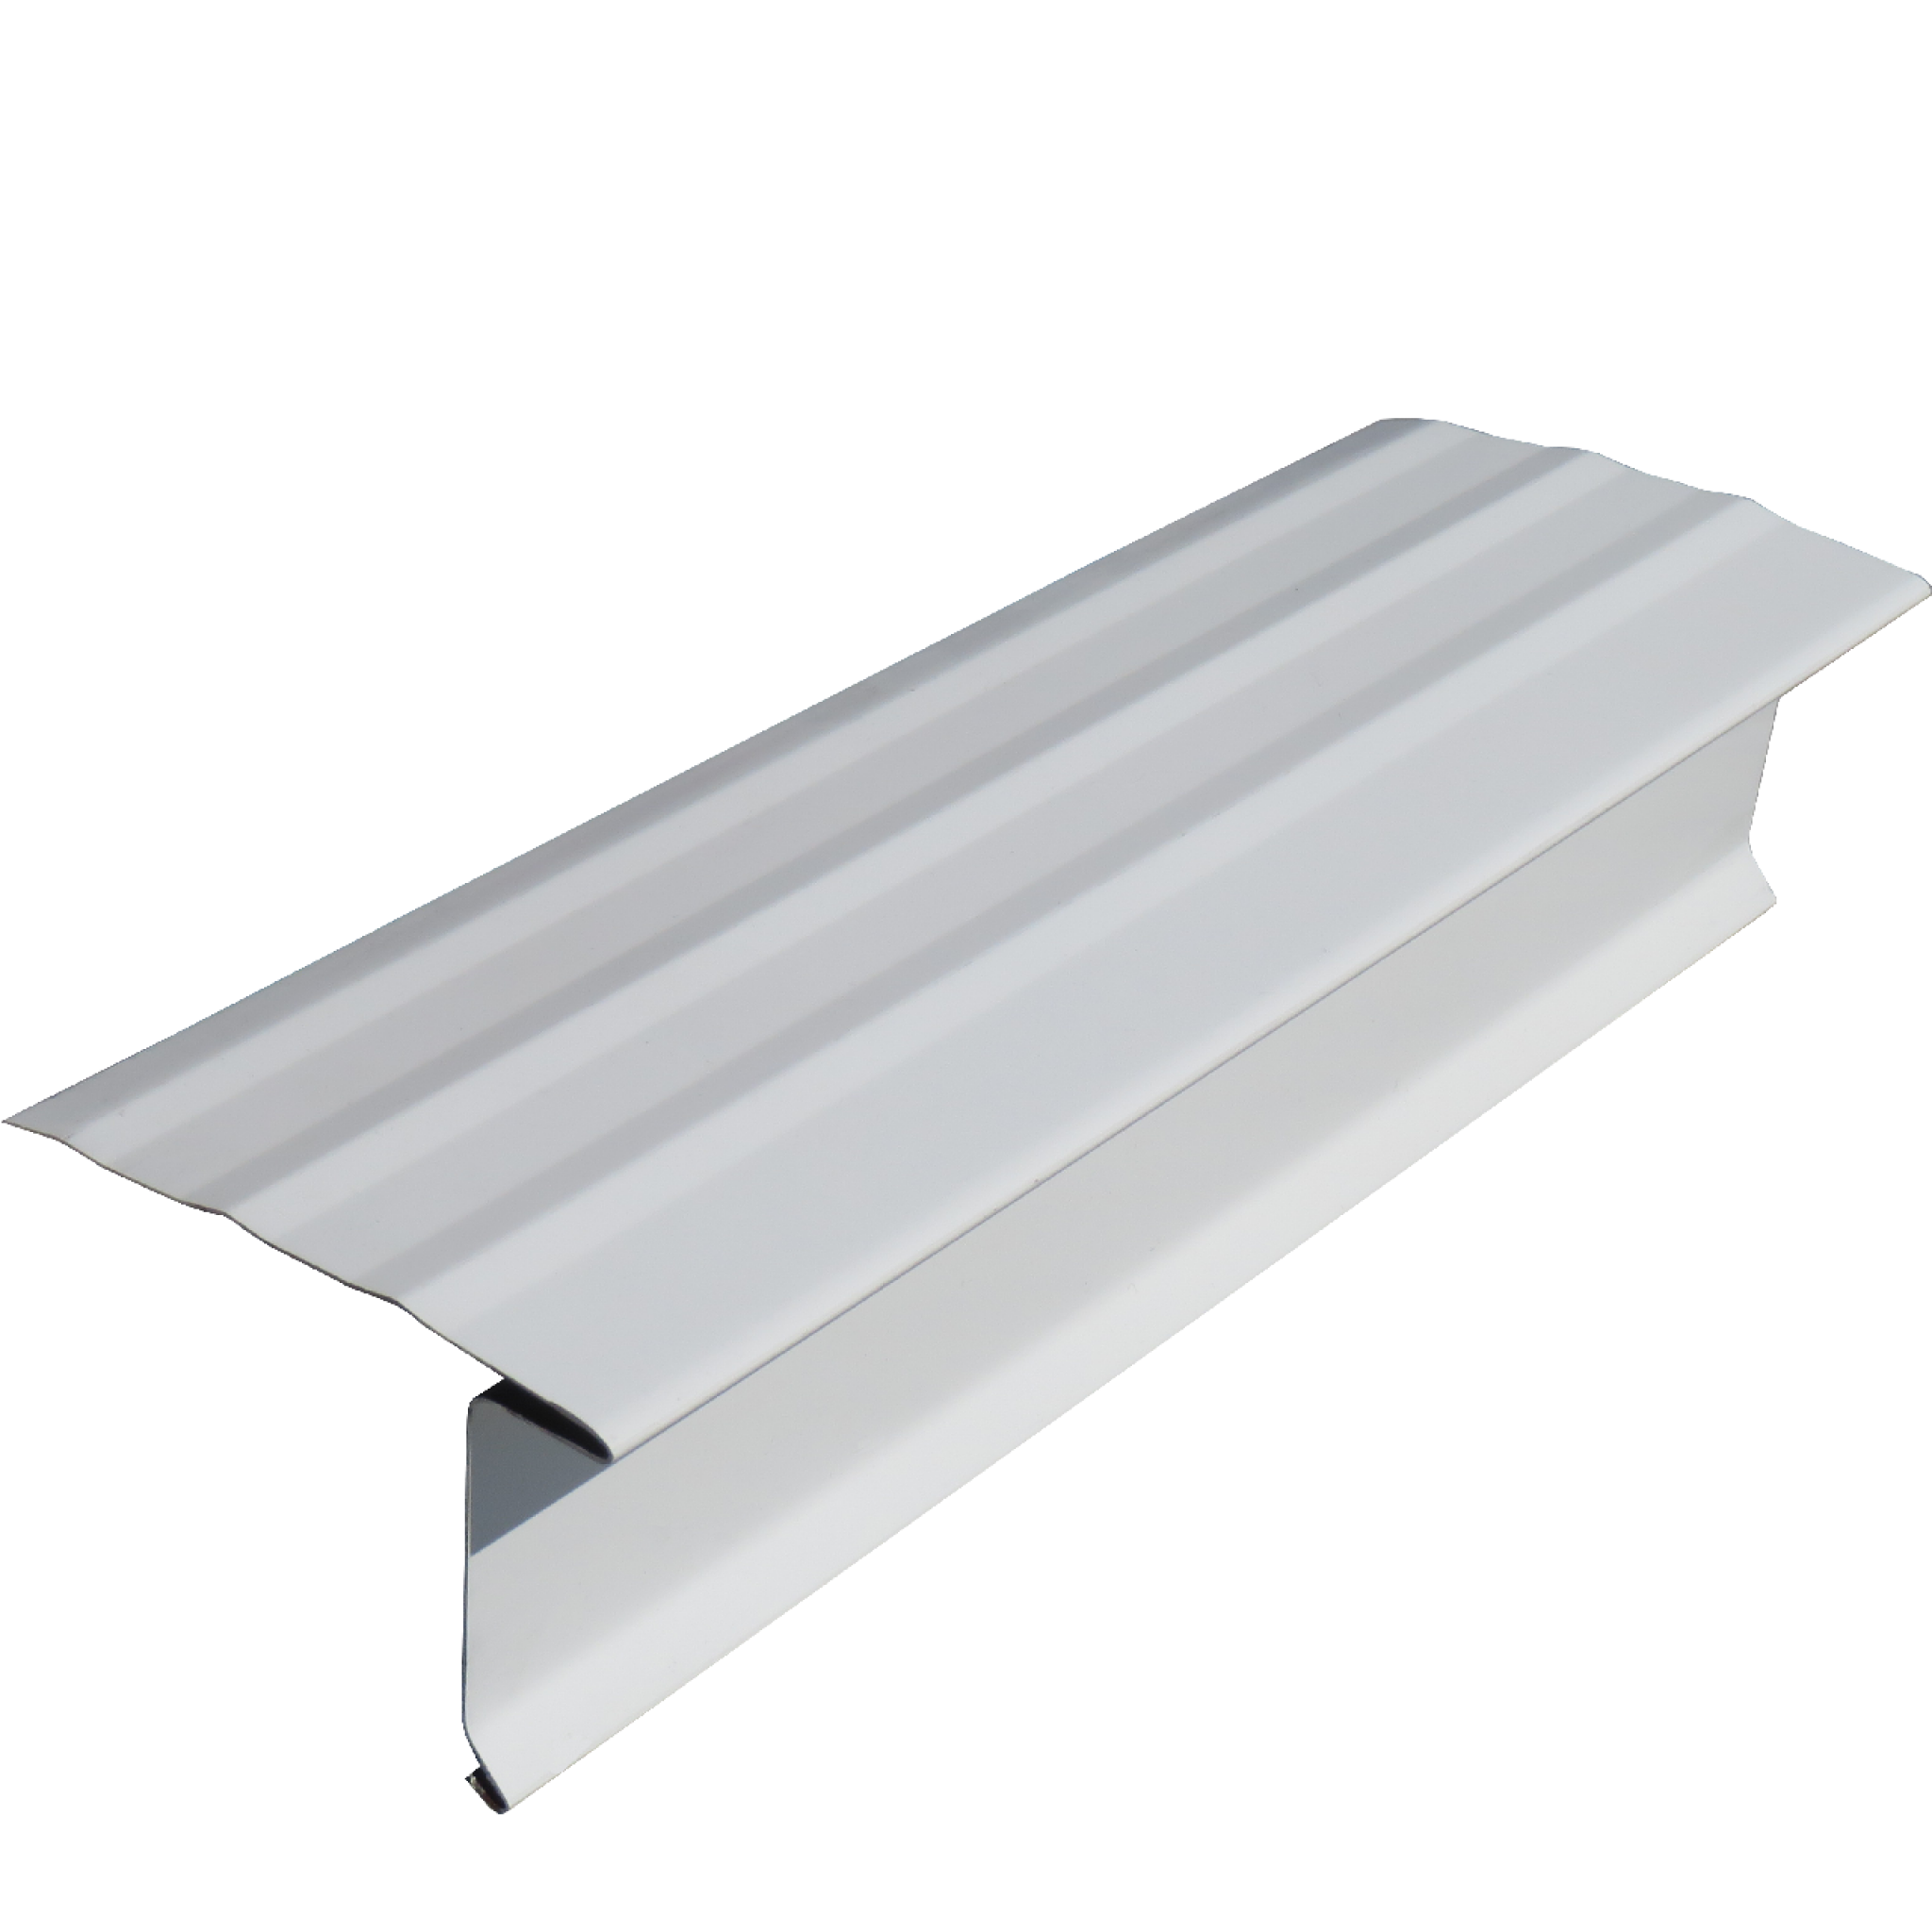 Large Aluminum Roof Edge